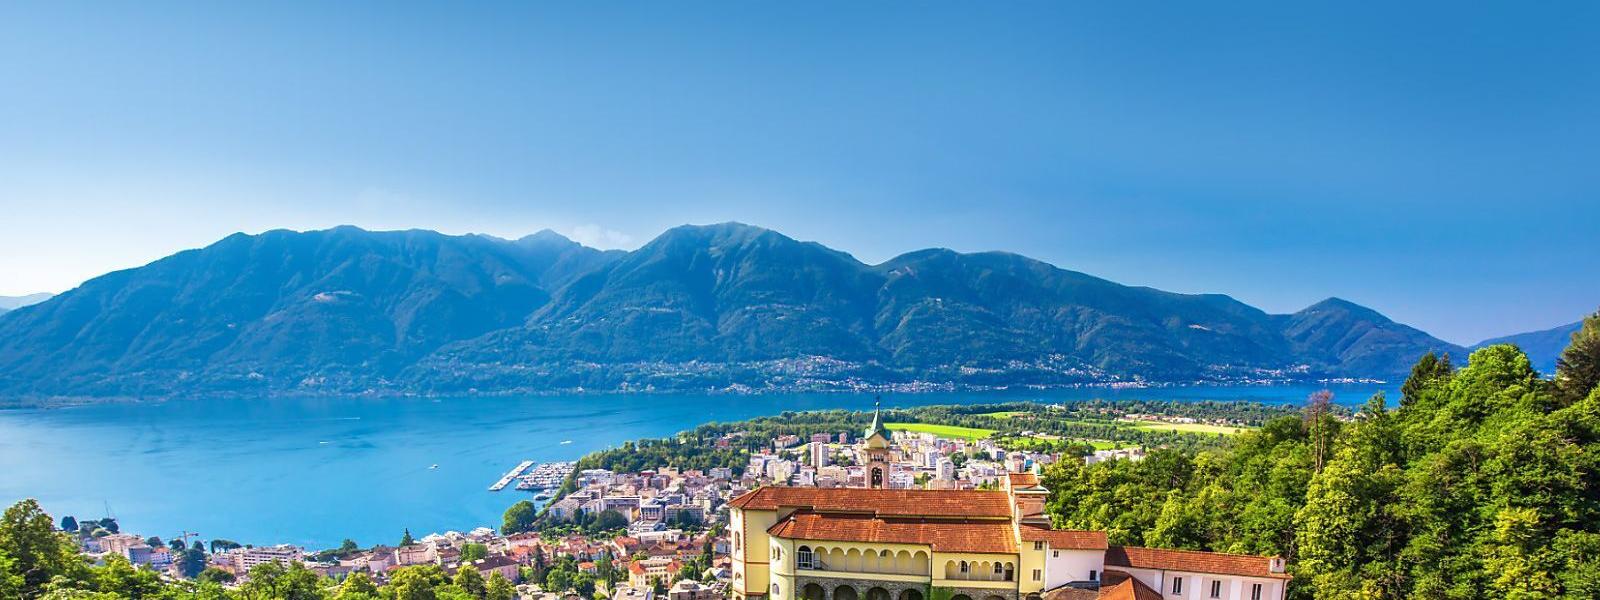 Luxus Ferienhäuser und Ferienwohnungen am Lago Maggiore - BELLEVUE Ferienhaus